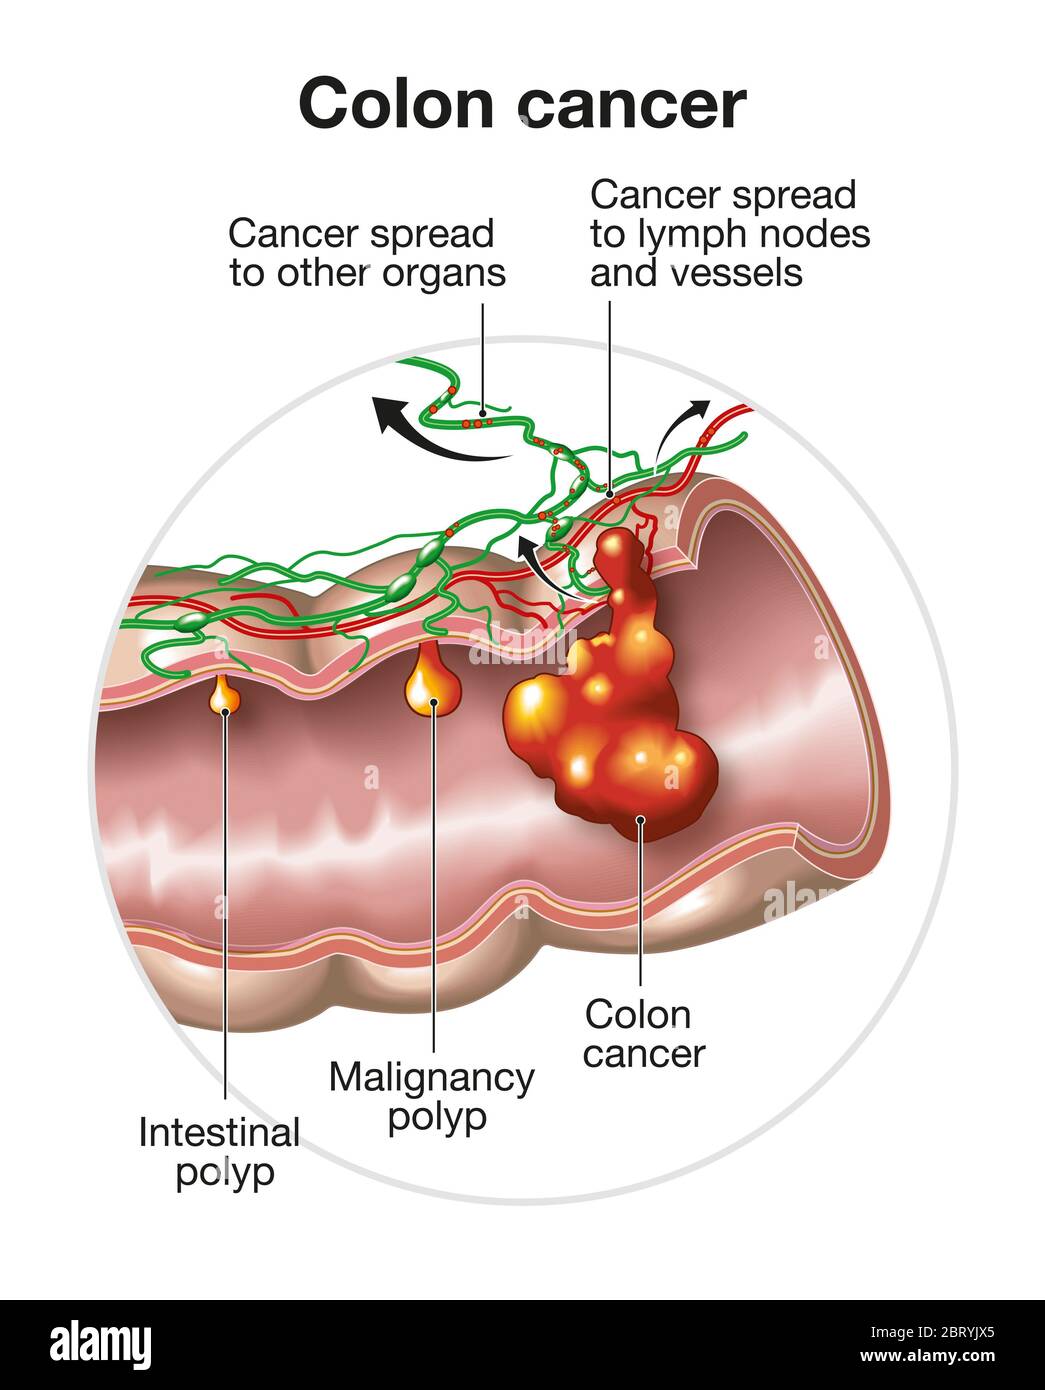 Illustration montrant une grande digestion avec polype intestinale, polype maligneux et cancer du côlon et se propageant dans les ganglions lymphatiques et les vaisseaux Banque D'Images